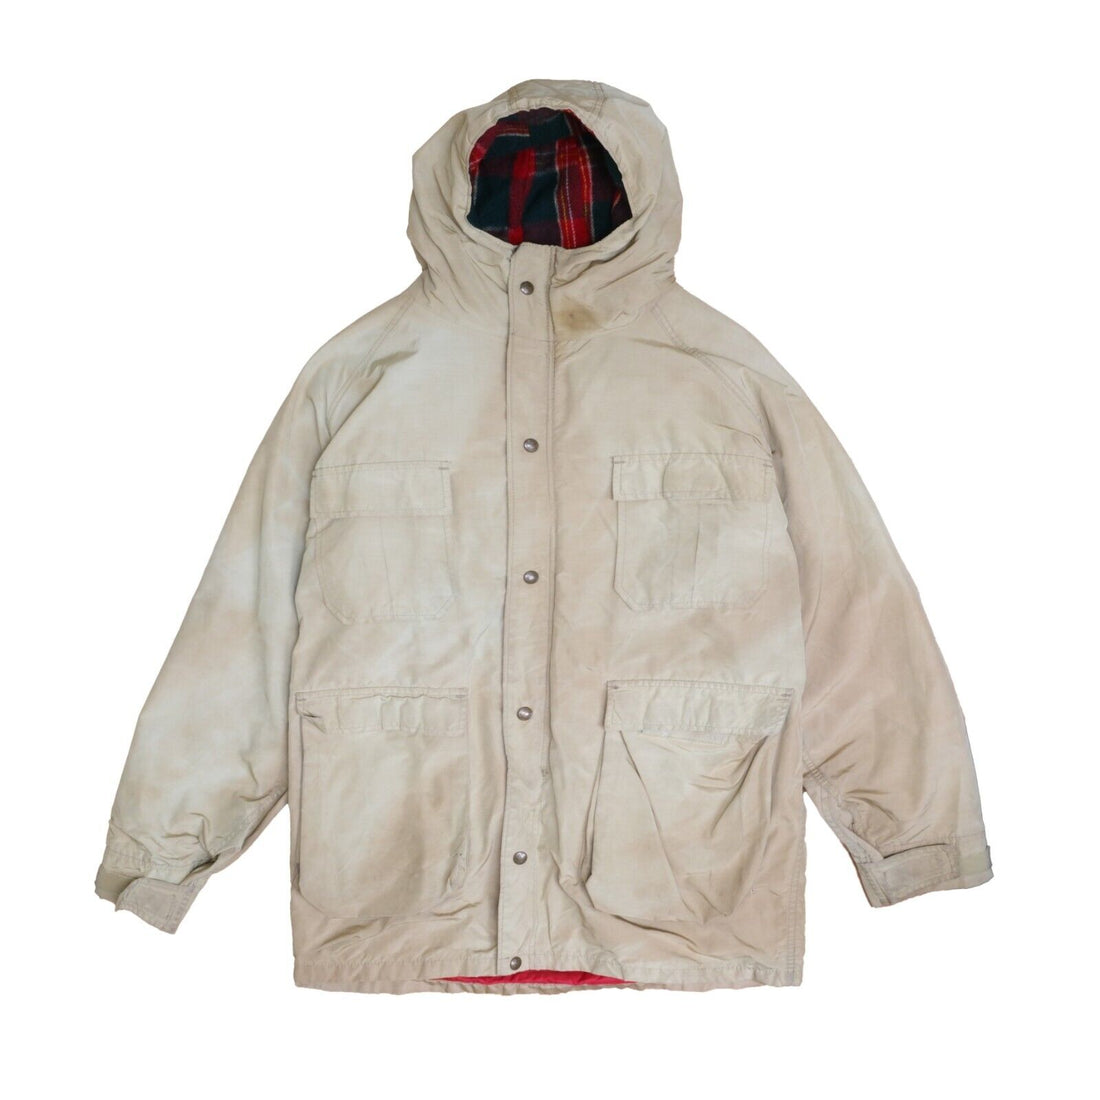 Vintage Woolrich Field Coat Jacket Size XL Beige Plaid Wool Lined